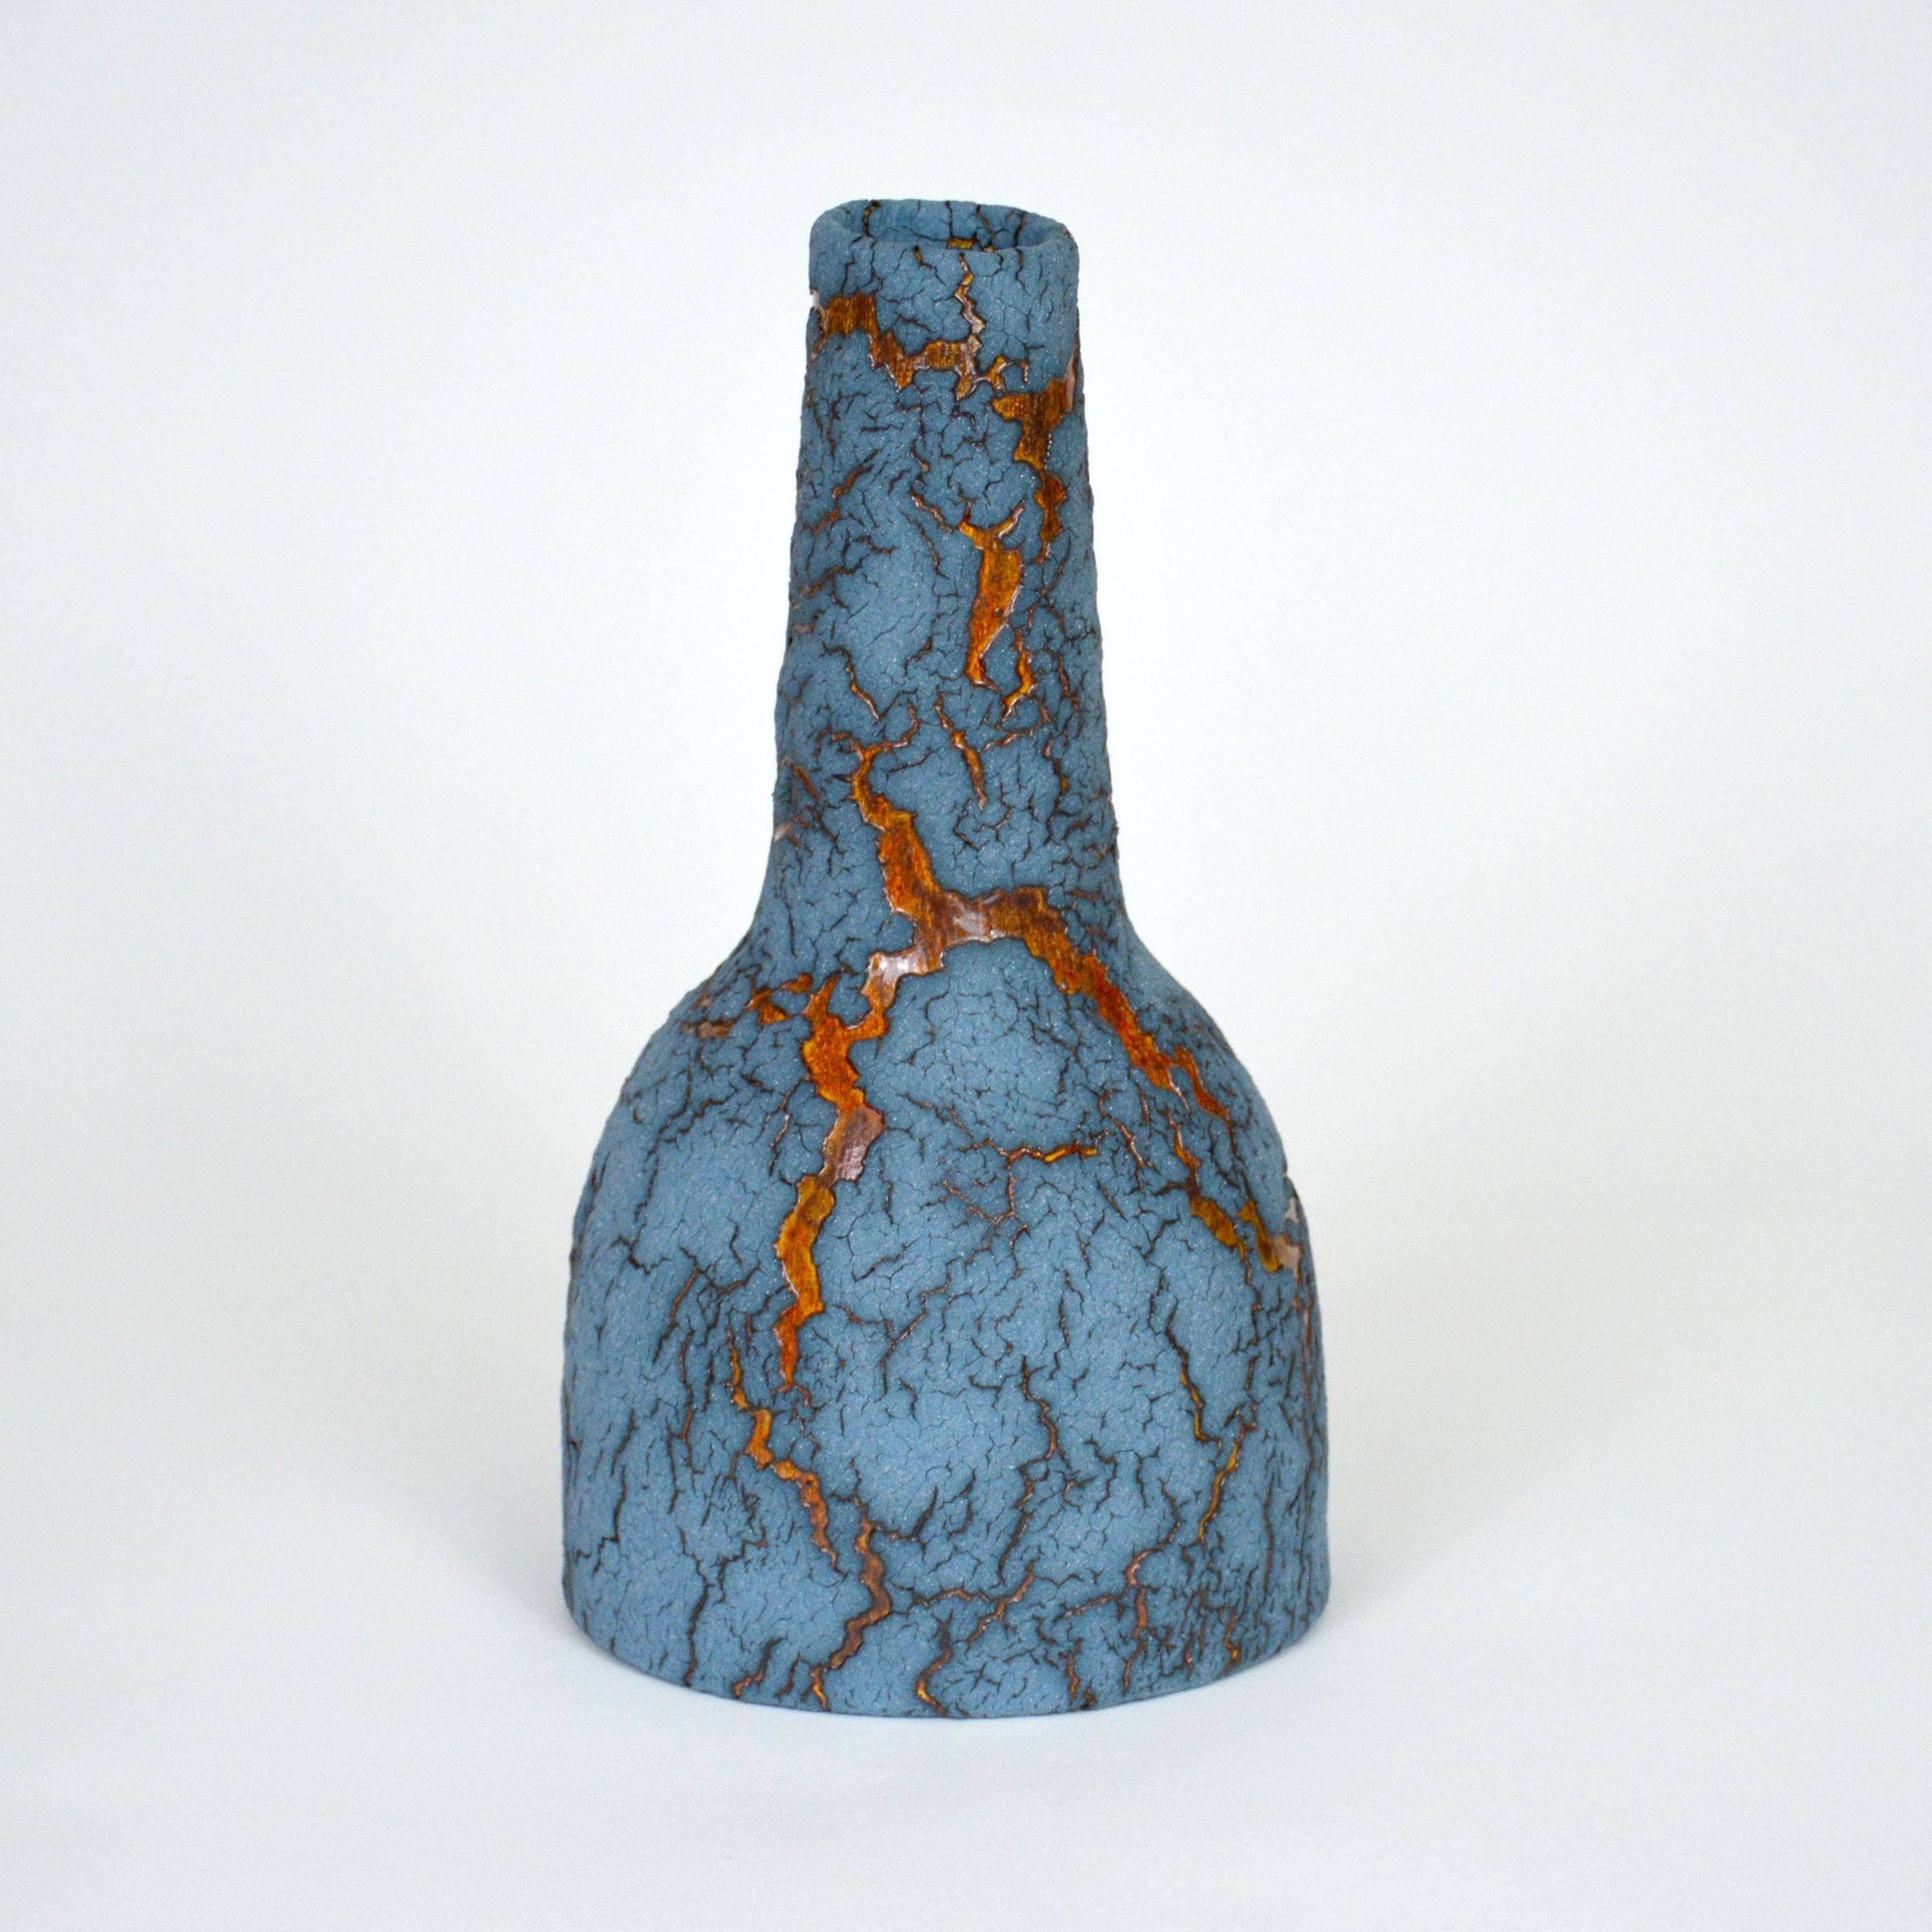 Keramikflasche von William Edwards
Handgefertigtes Steingutgefäß, mehrfach gebrannt, um eine strukturierte Oberfläche von zufälliger Abstraktion zu erhalten, mattblau mit bernsteinfarbener, glänzender mikrokristalliner Glasur, die bei bestimmten